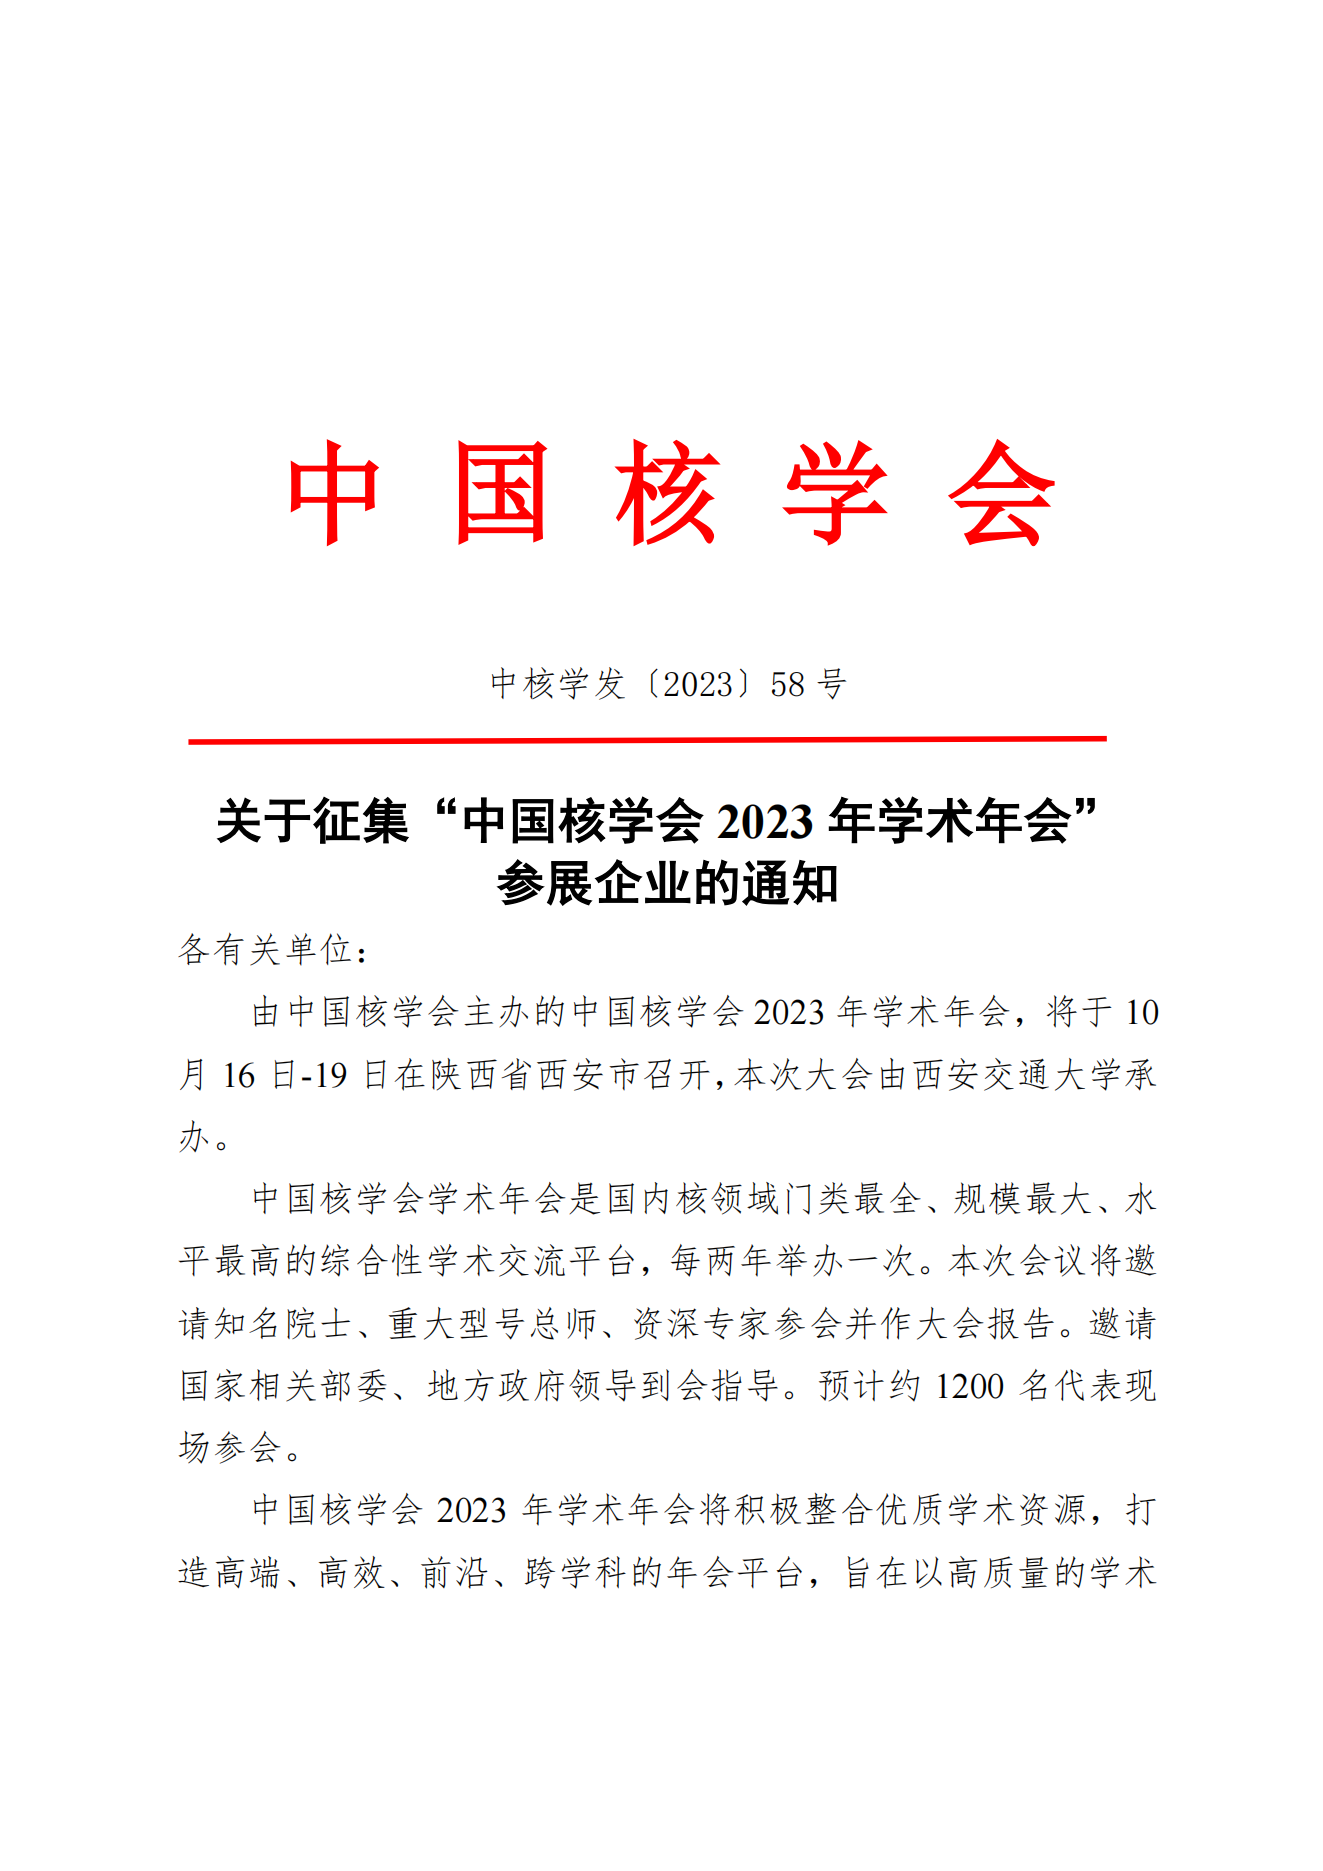 关于征集“中国核学会2023年学术年会”参展企业的通知(5)_00.png